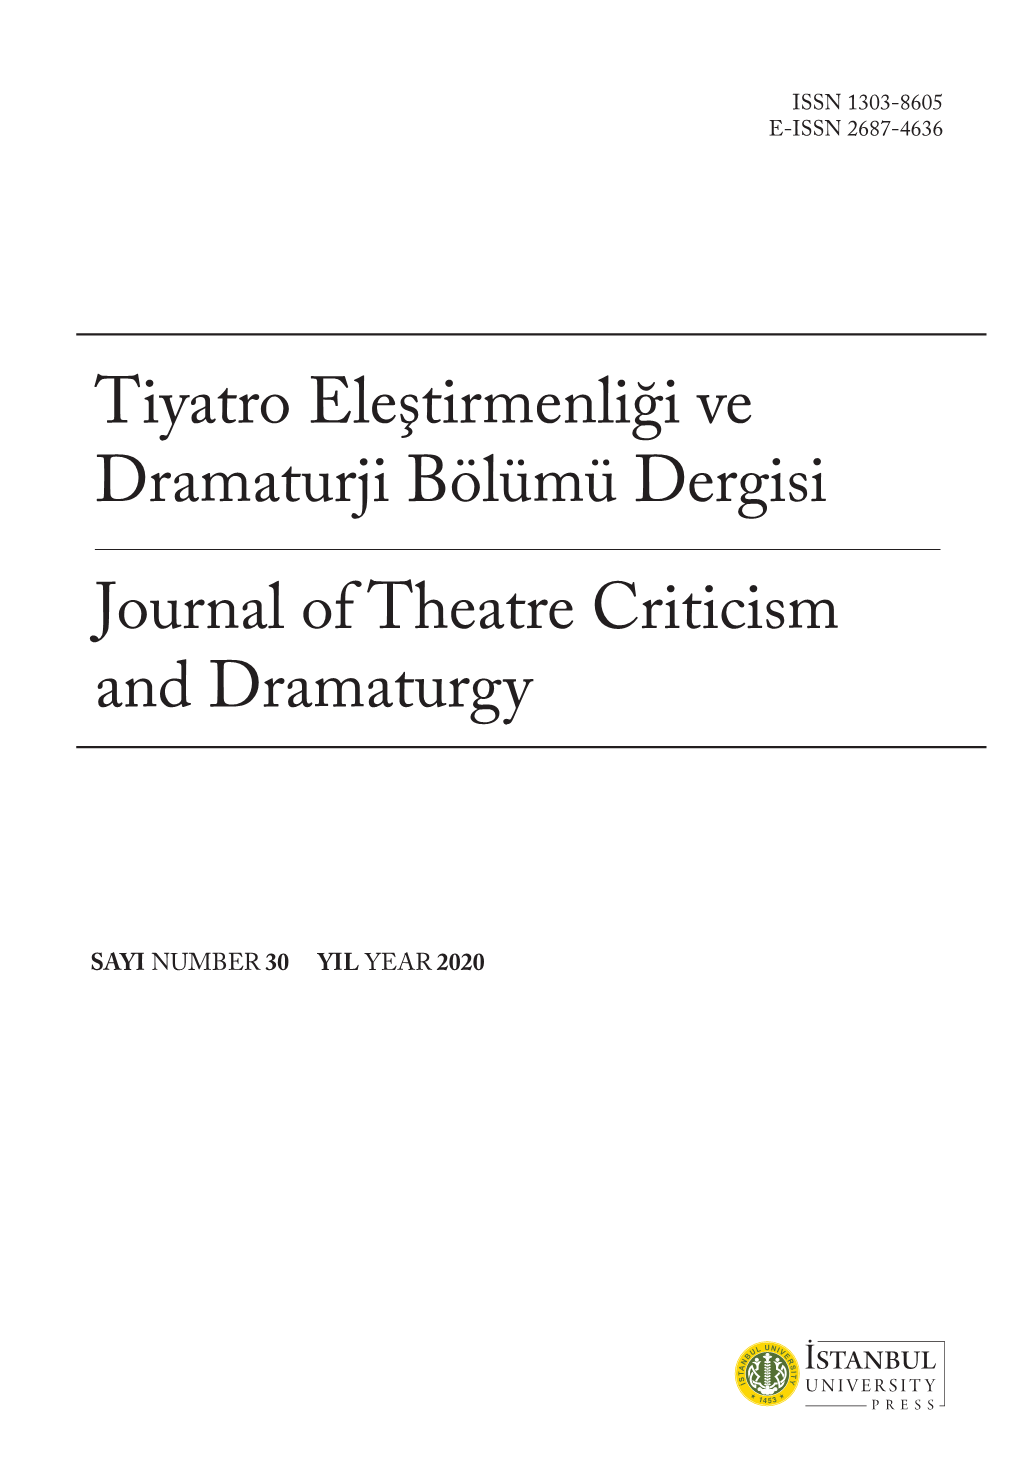 Tiyatro Eleştirmenliği Ve Dramaturji Bölümü Dergisi Journal of Theatre Criticism and Dramaturgy